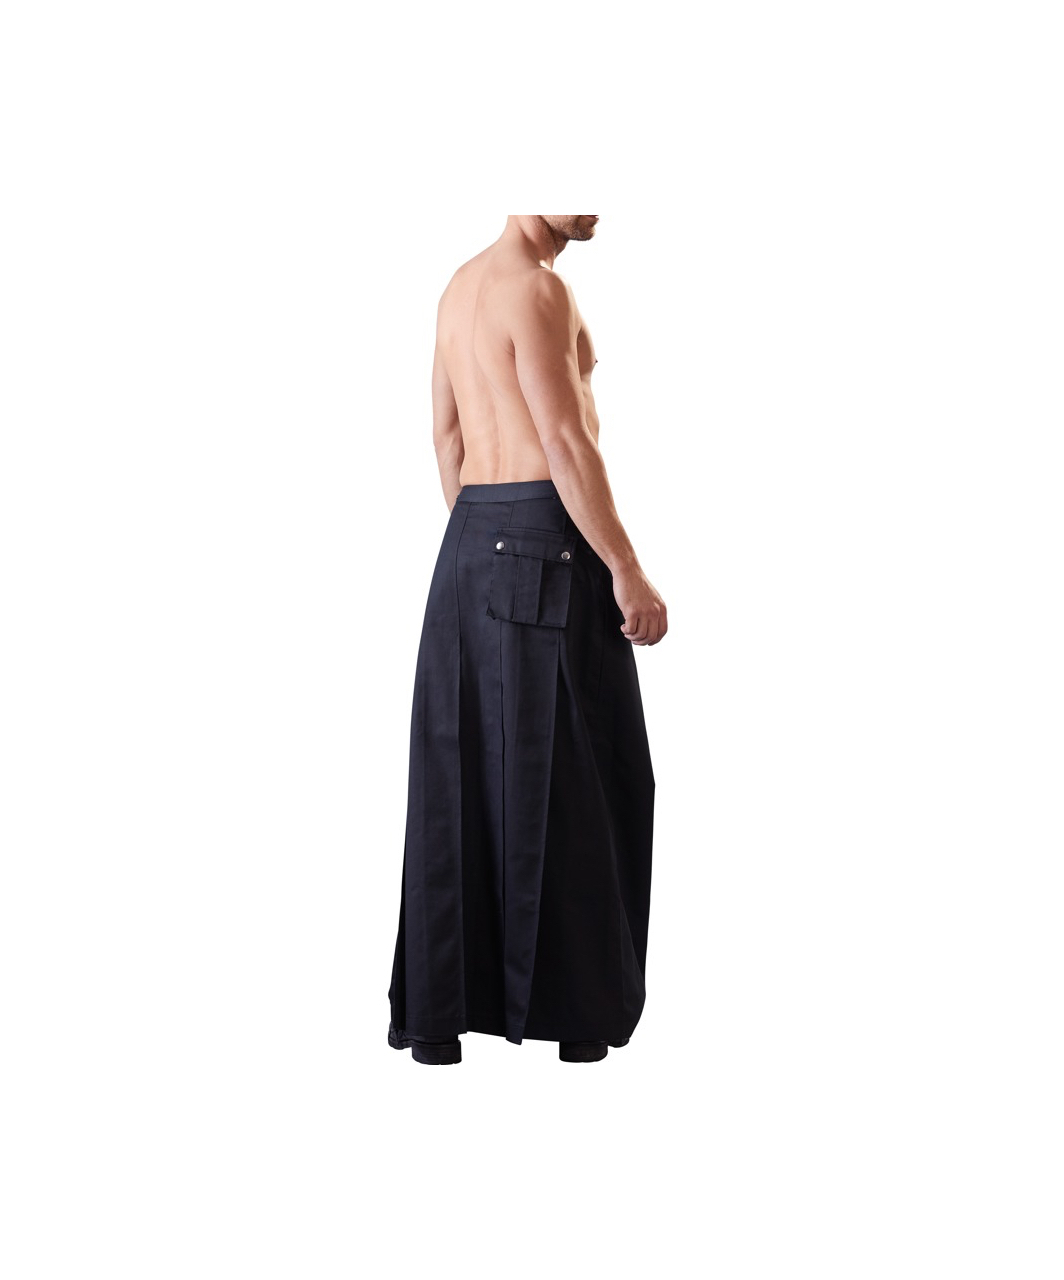 Svenjoyment full-length men's play skirt